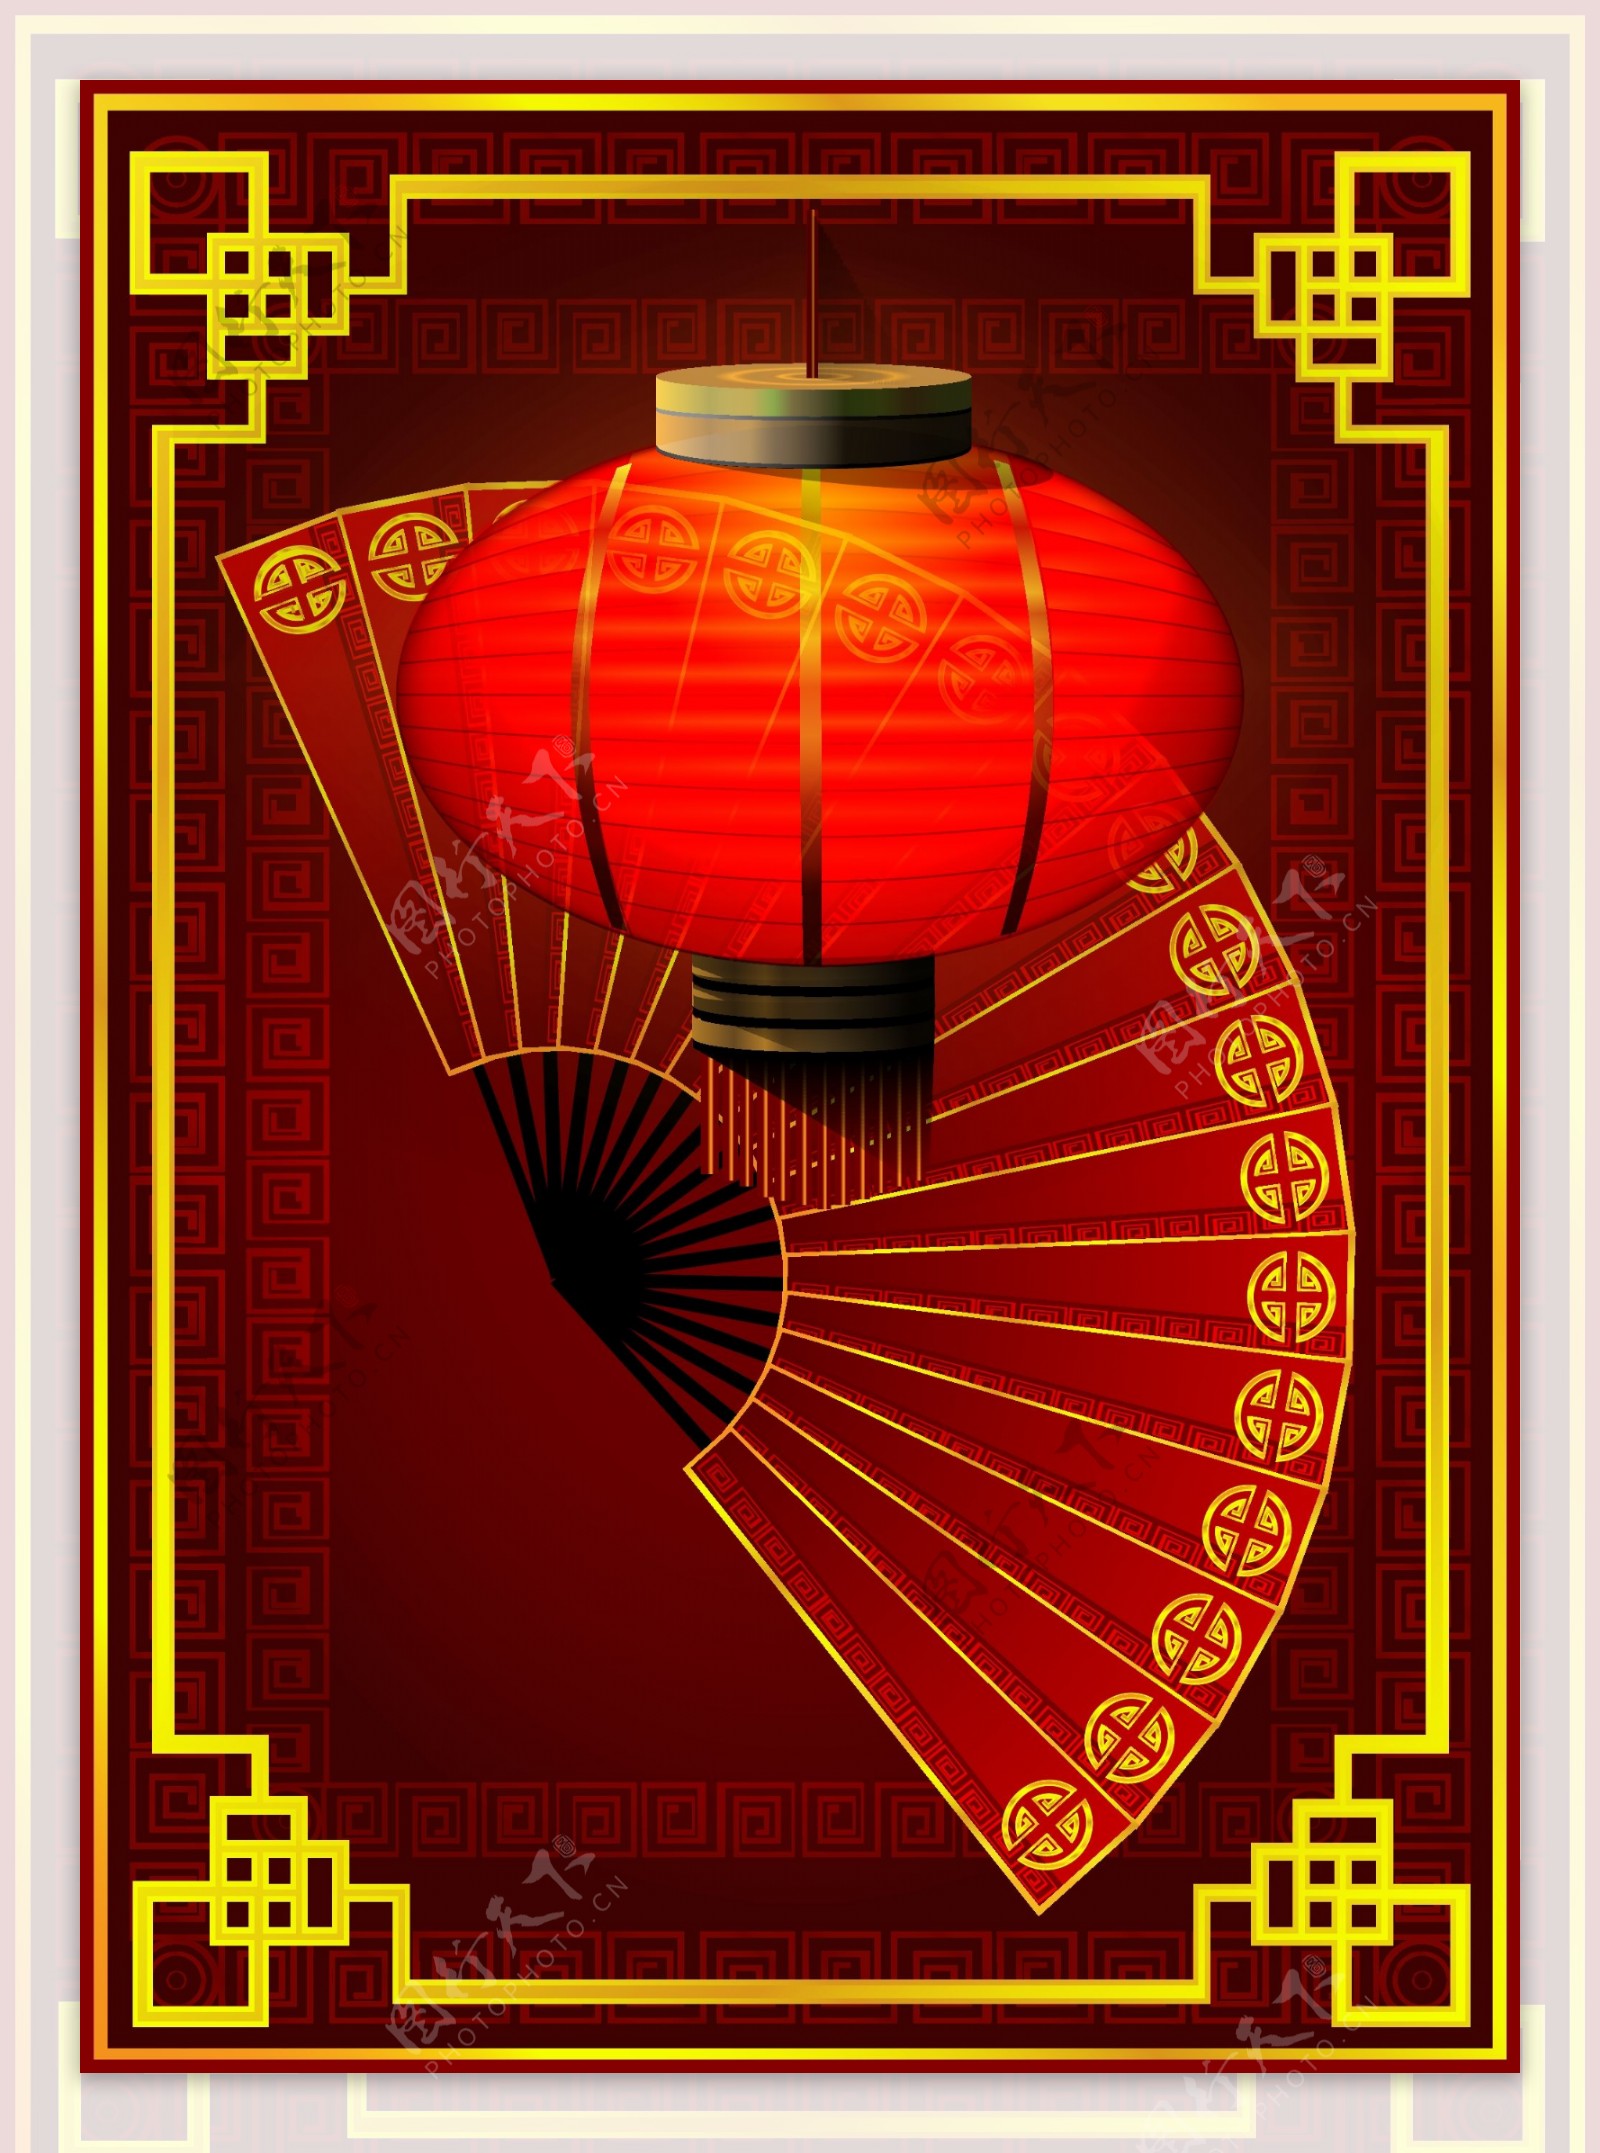 中国传传统灯笼和扇子节日元素